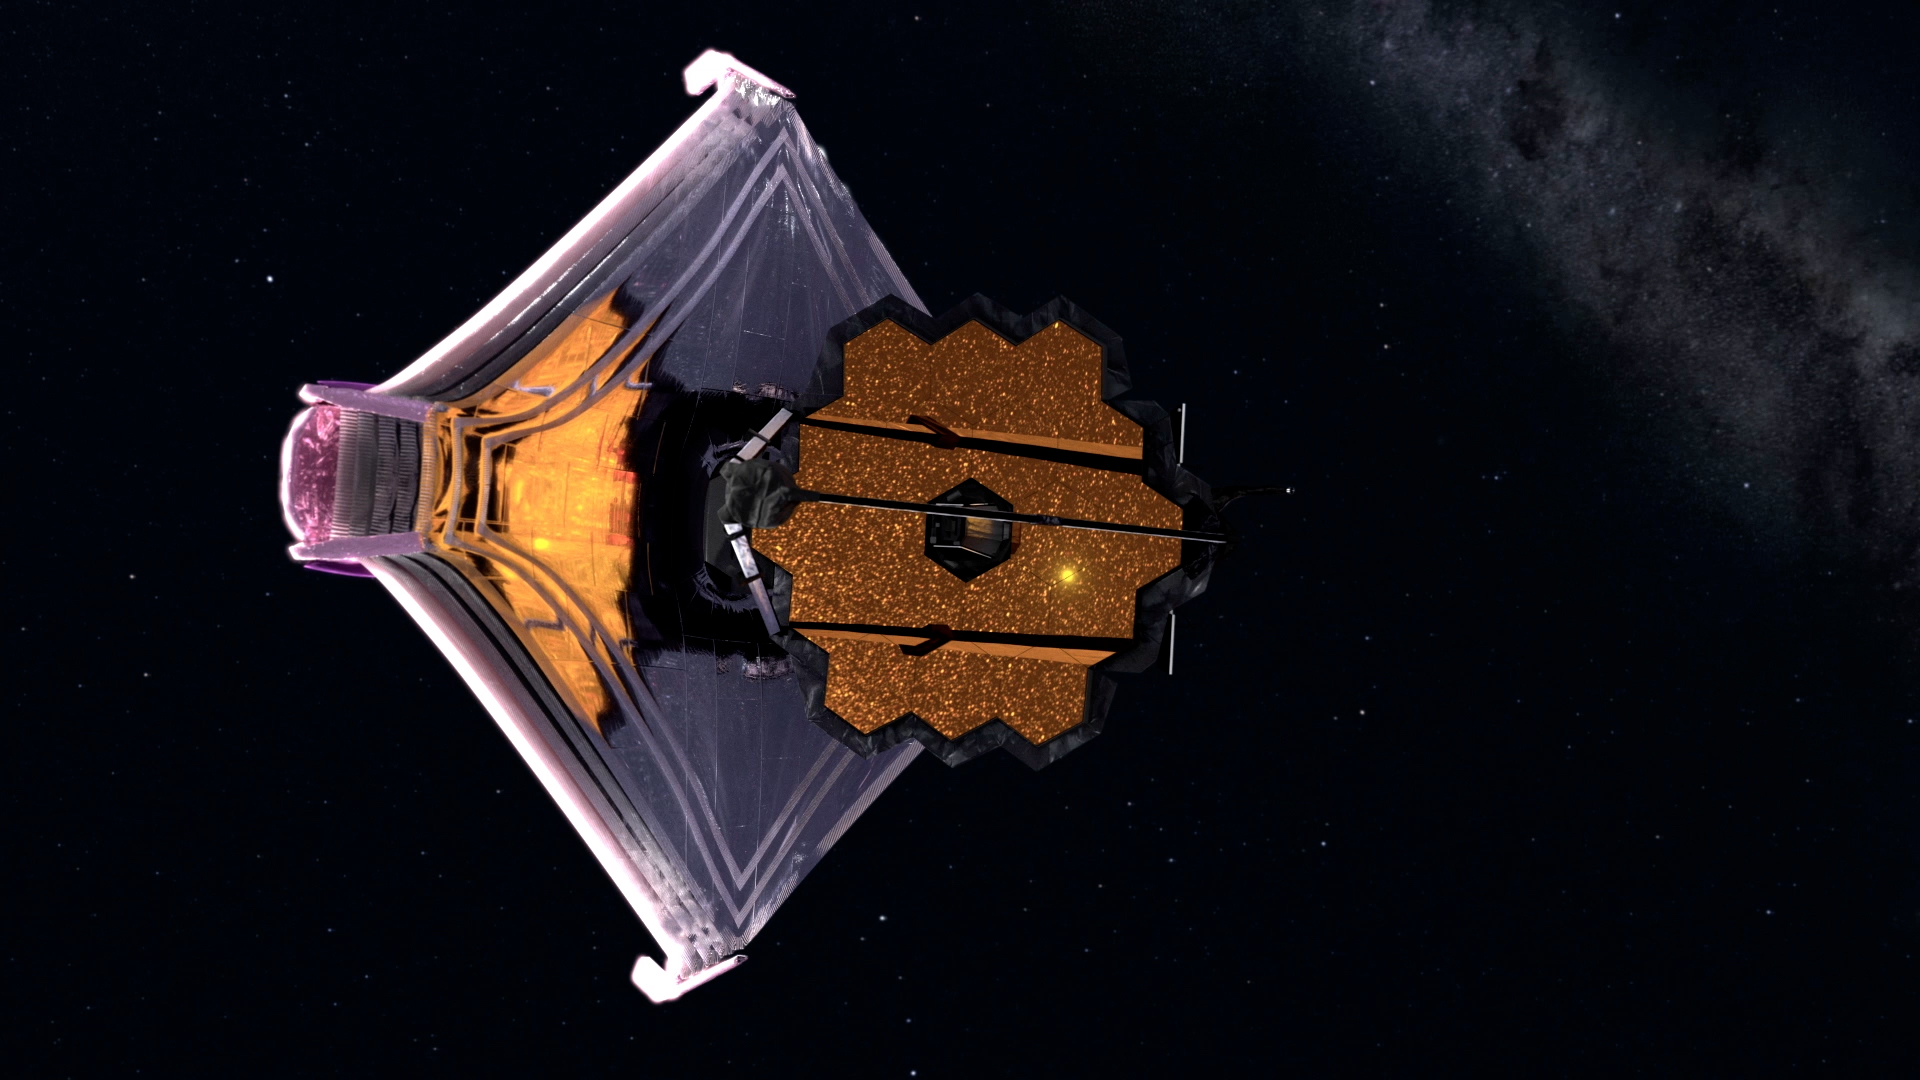 ‘¡Bienvenido a casa, Webb!’: Telescopio espacial llega a su órbita final para estudiar universo